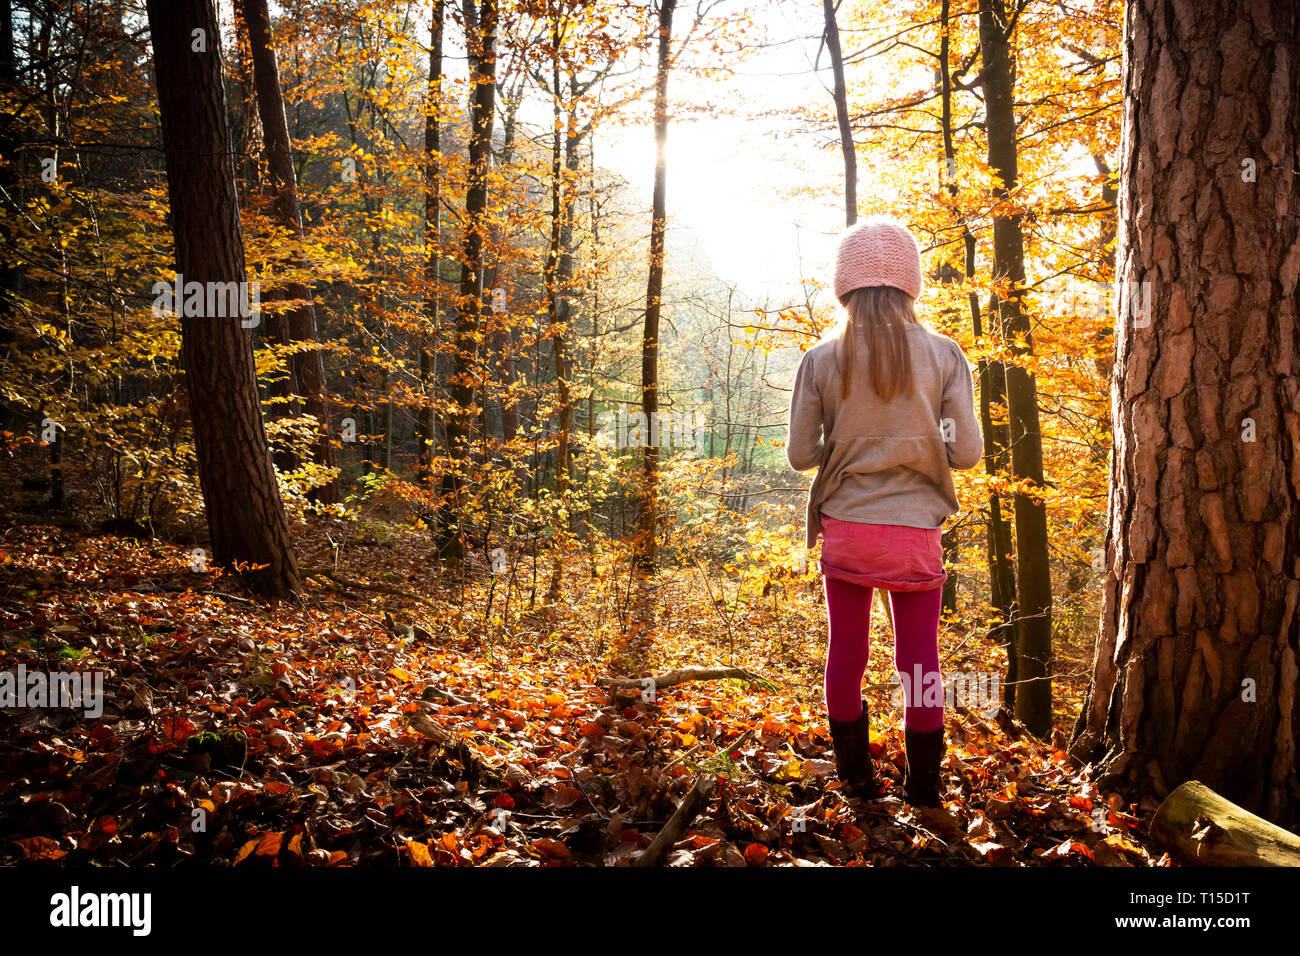 Jeune fille seule dans forêt d'automne, vue arrière Banque D'Images